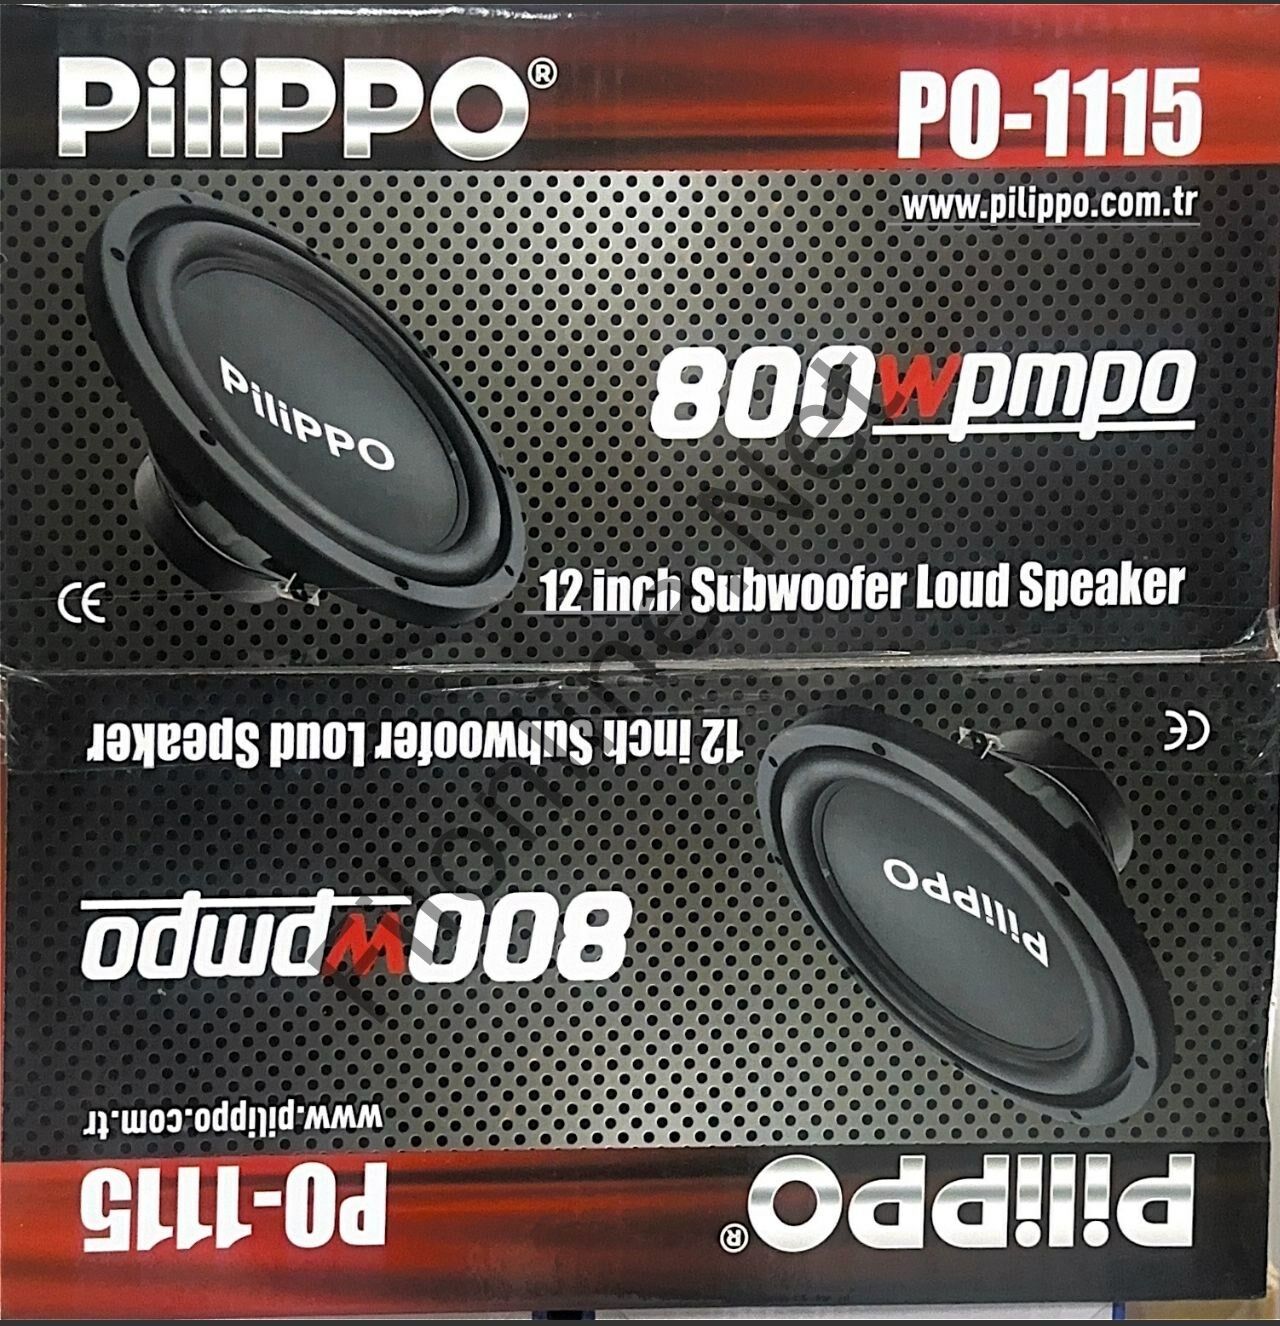 PILIPPO PO-1115 12 INCH 800W SUBWOOFER LOUD SPEAKER